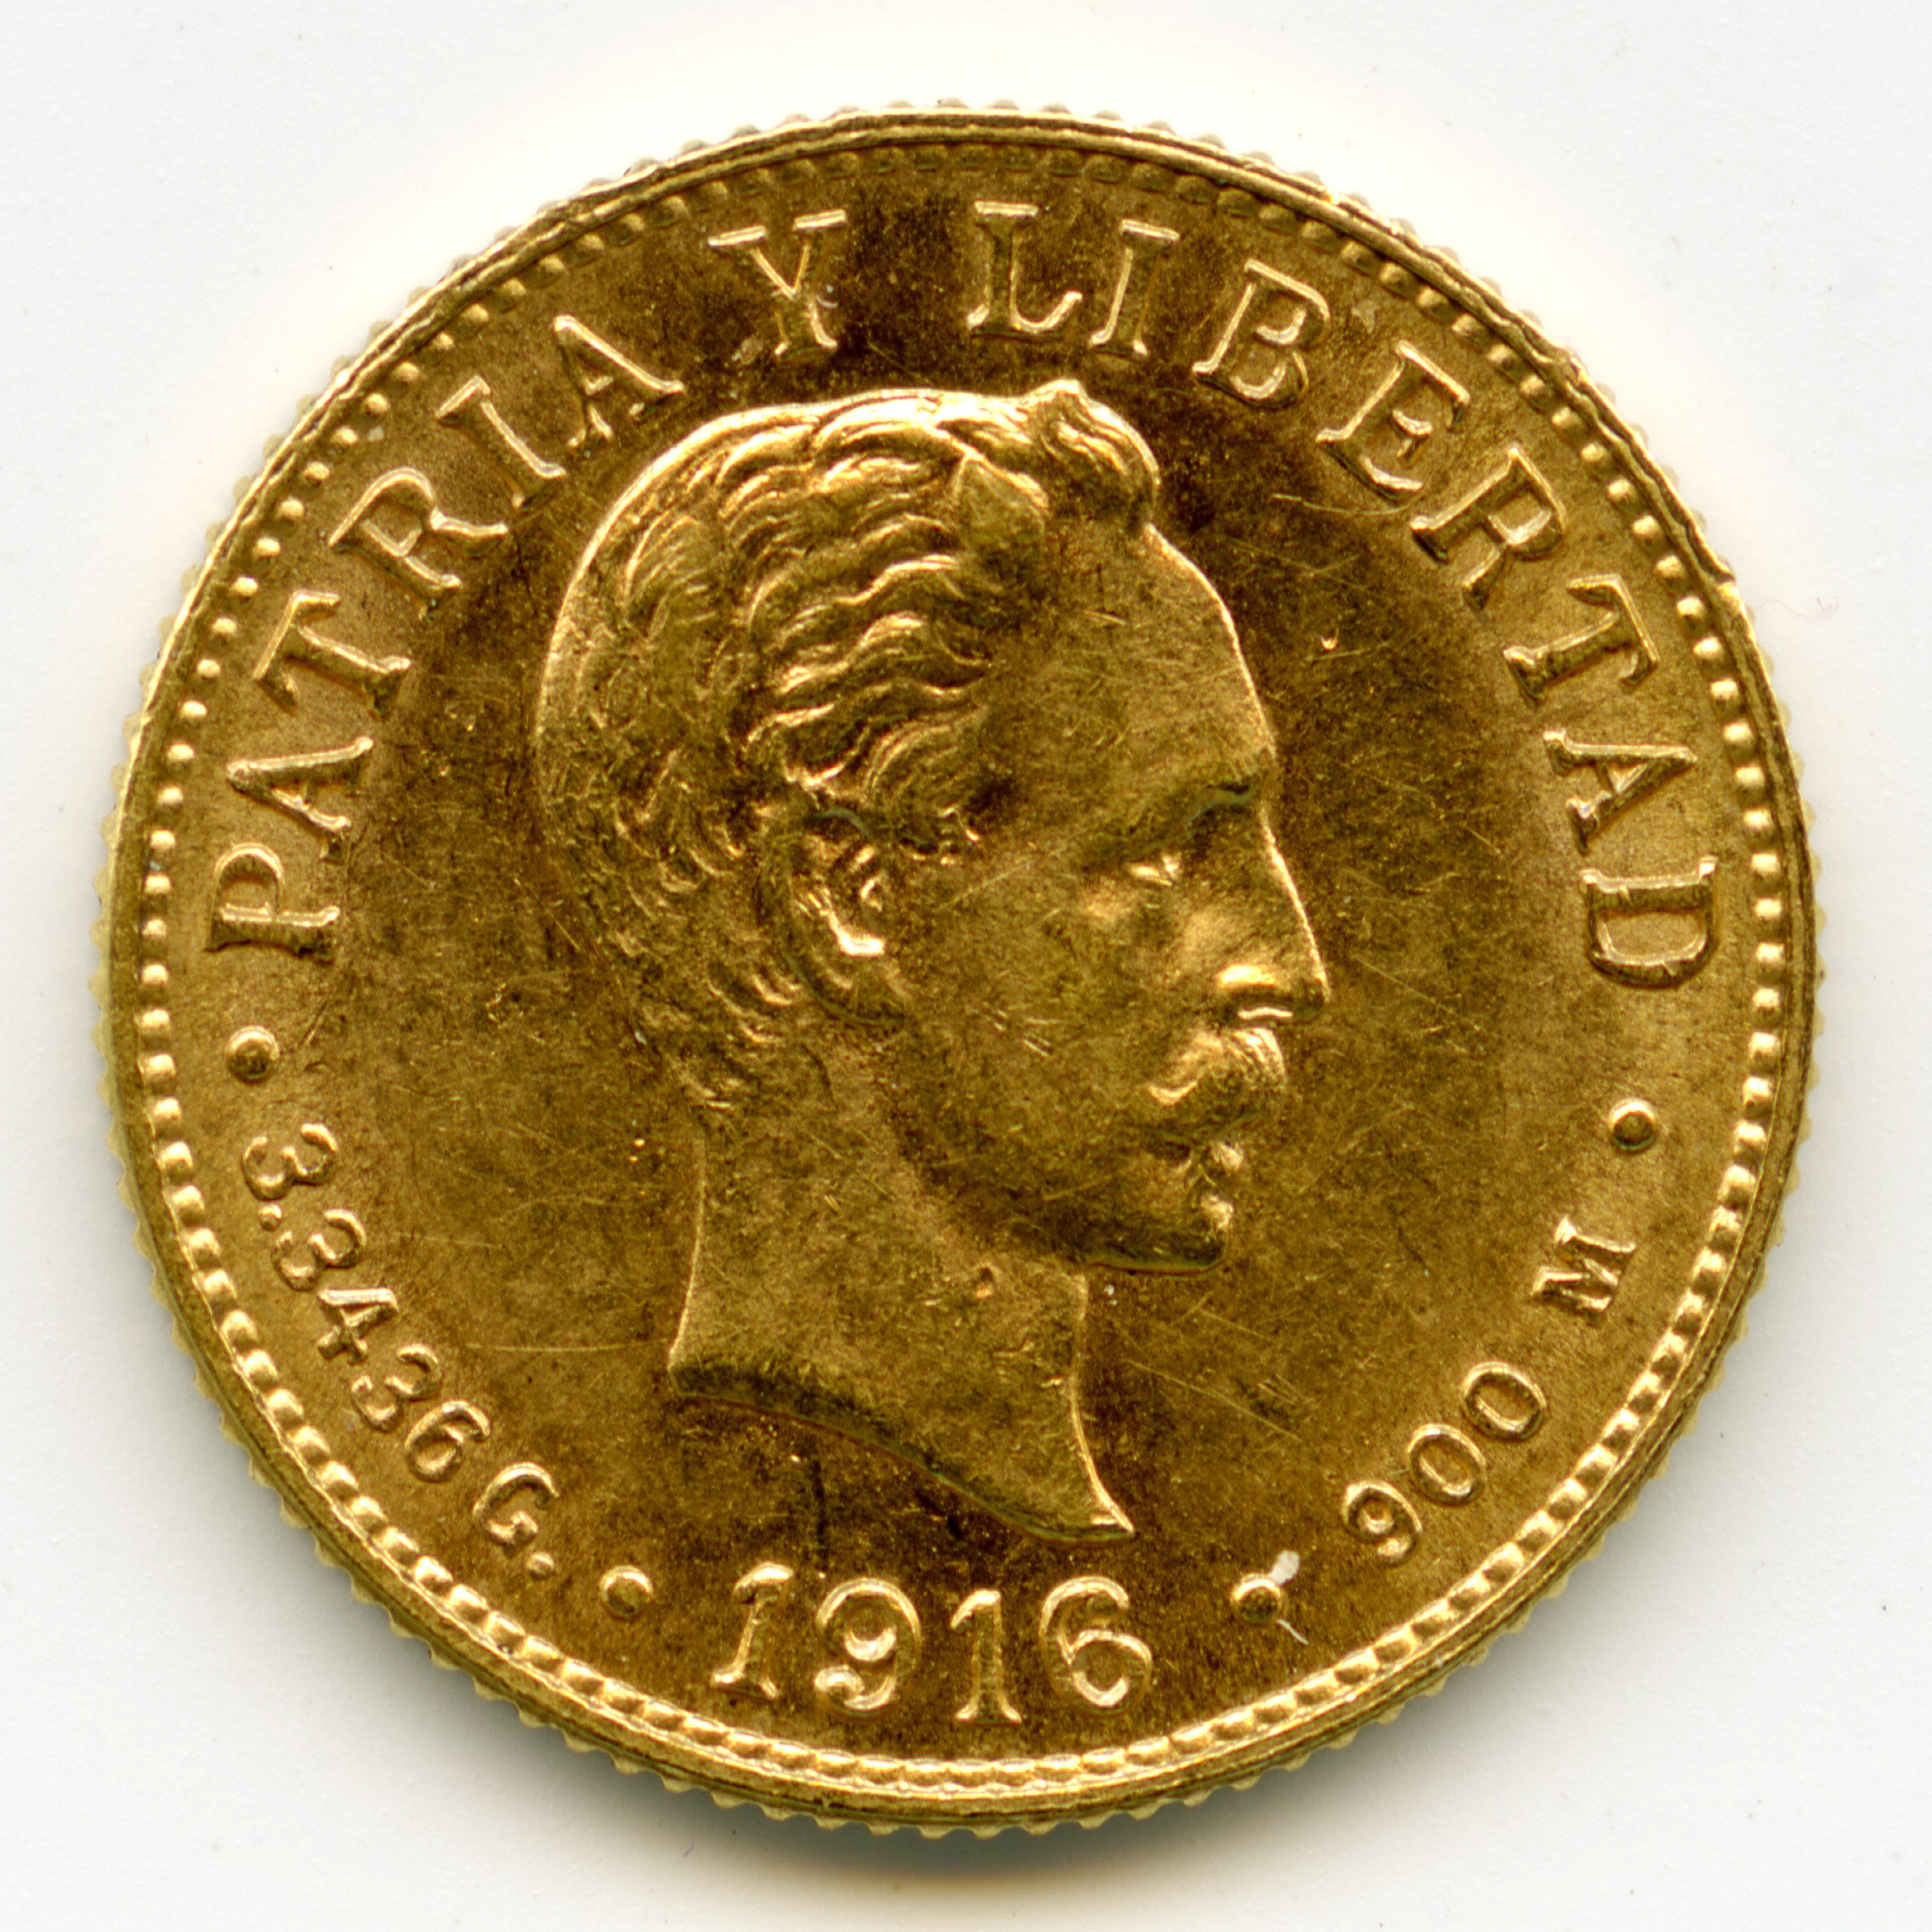 Cuba - 2 Pesos - 1916 avers